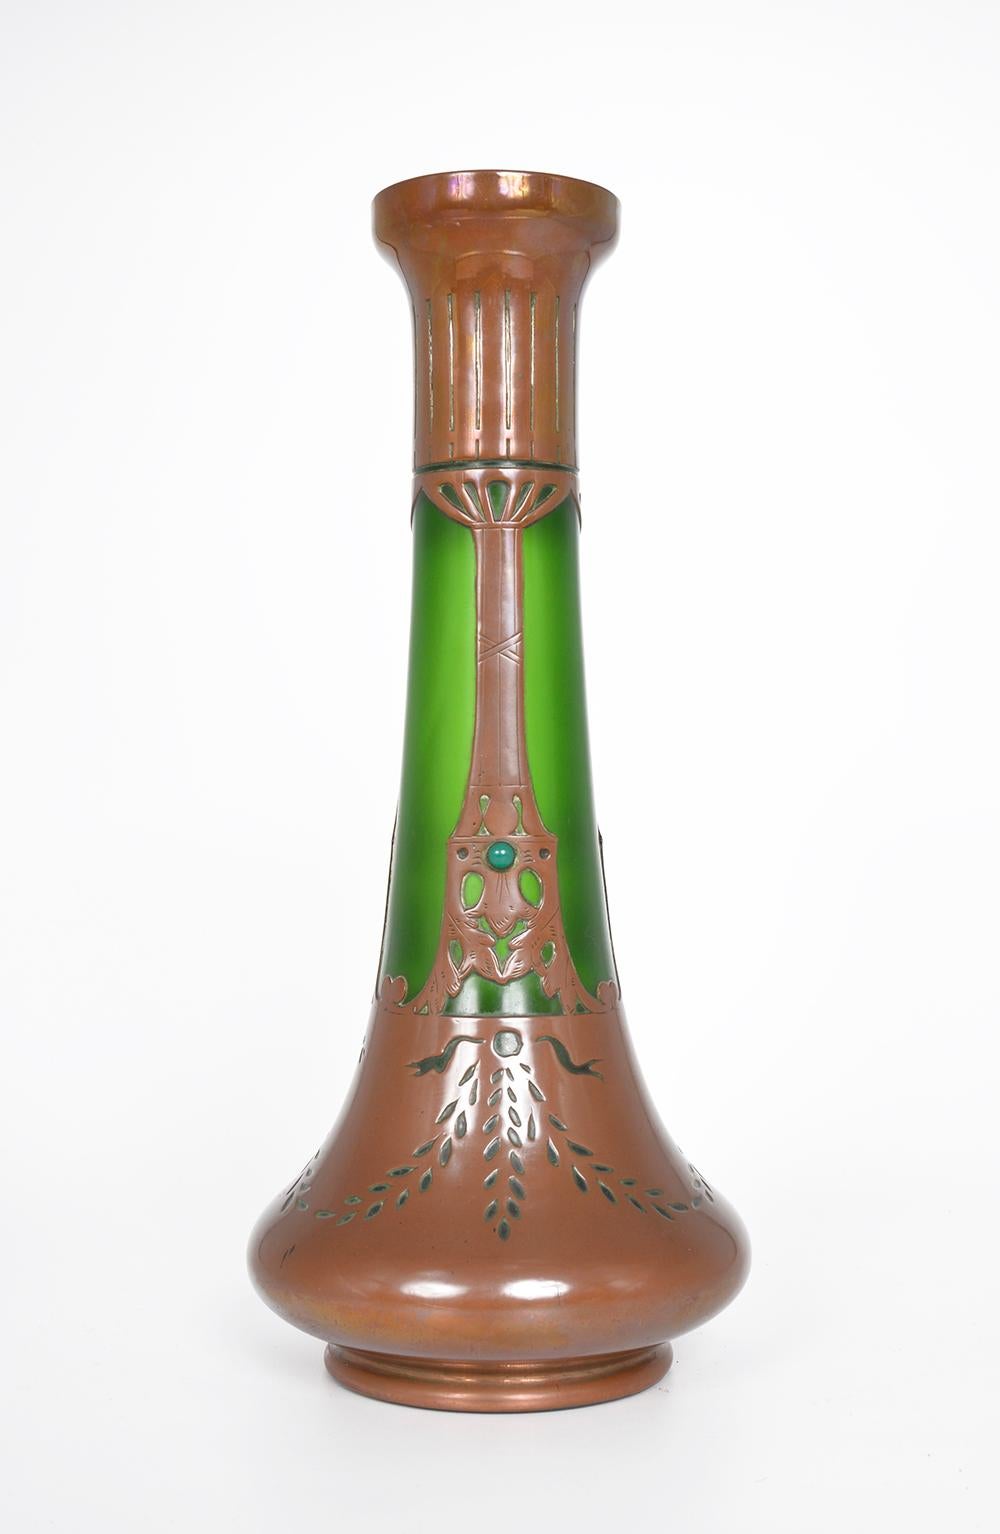 Il s'agit d'un grand vase en verre opaque vert émeraude soufflé à la main, avec une décoration en cuivre appliquée et ajourée, qui a probablement été fabriqué en Autriche autour des années 1900. Son étonnant motif linéaire révèle l'influence